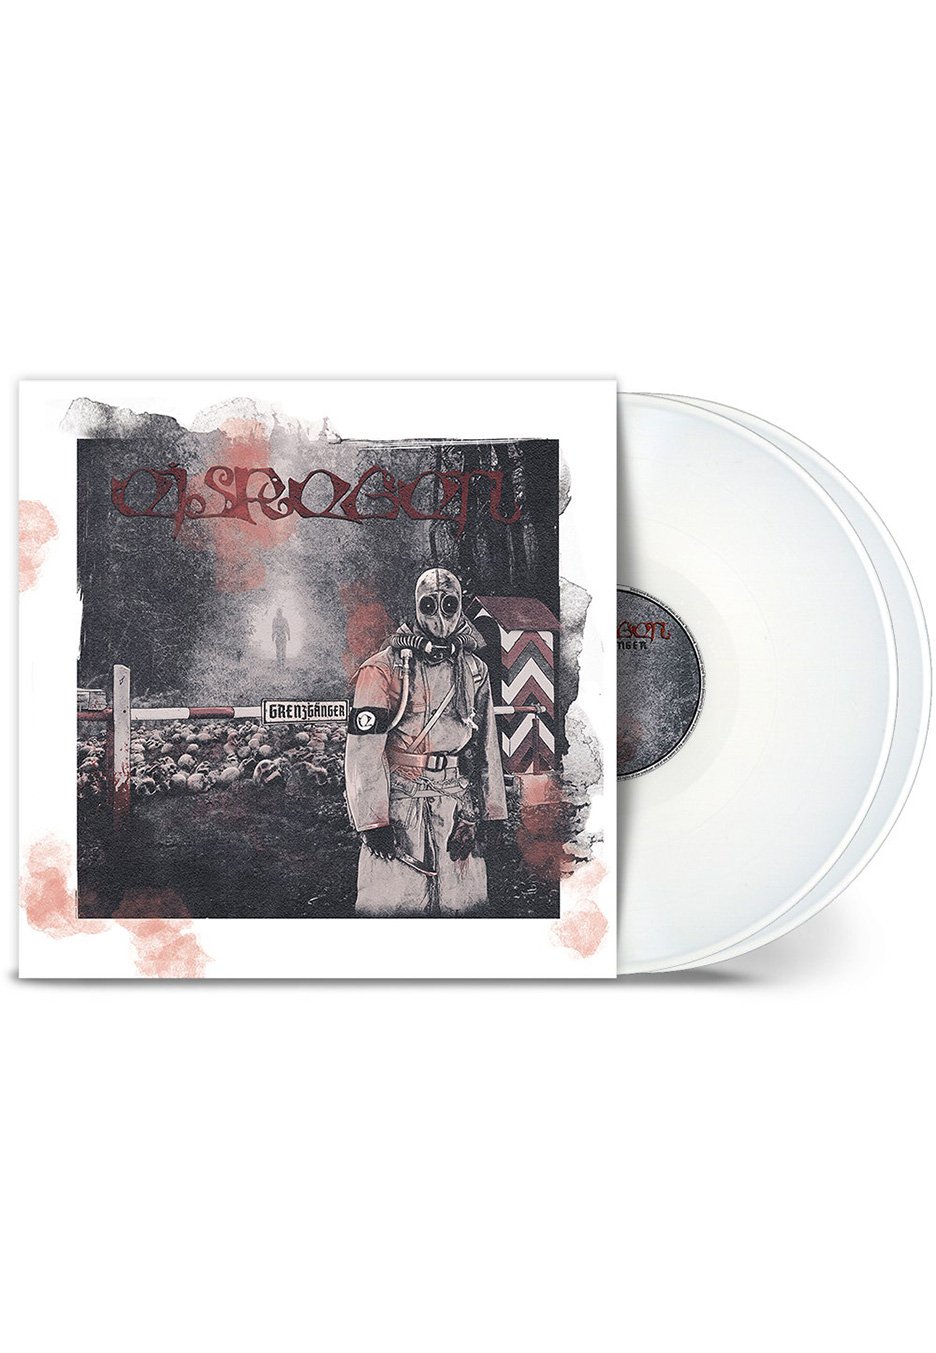 Eisregen - Grenzgänger White - Colored 2 Vinyl